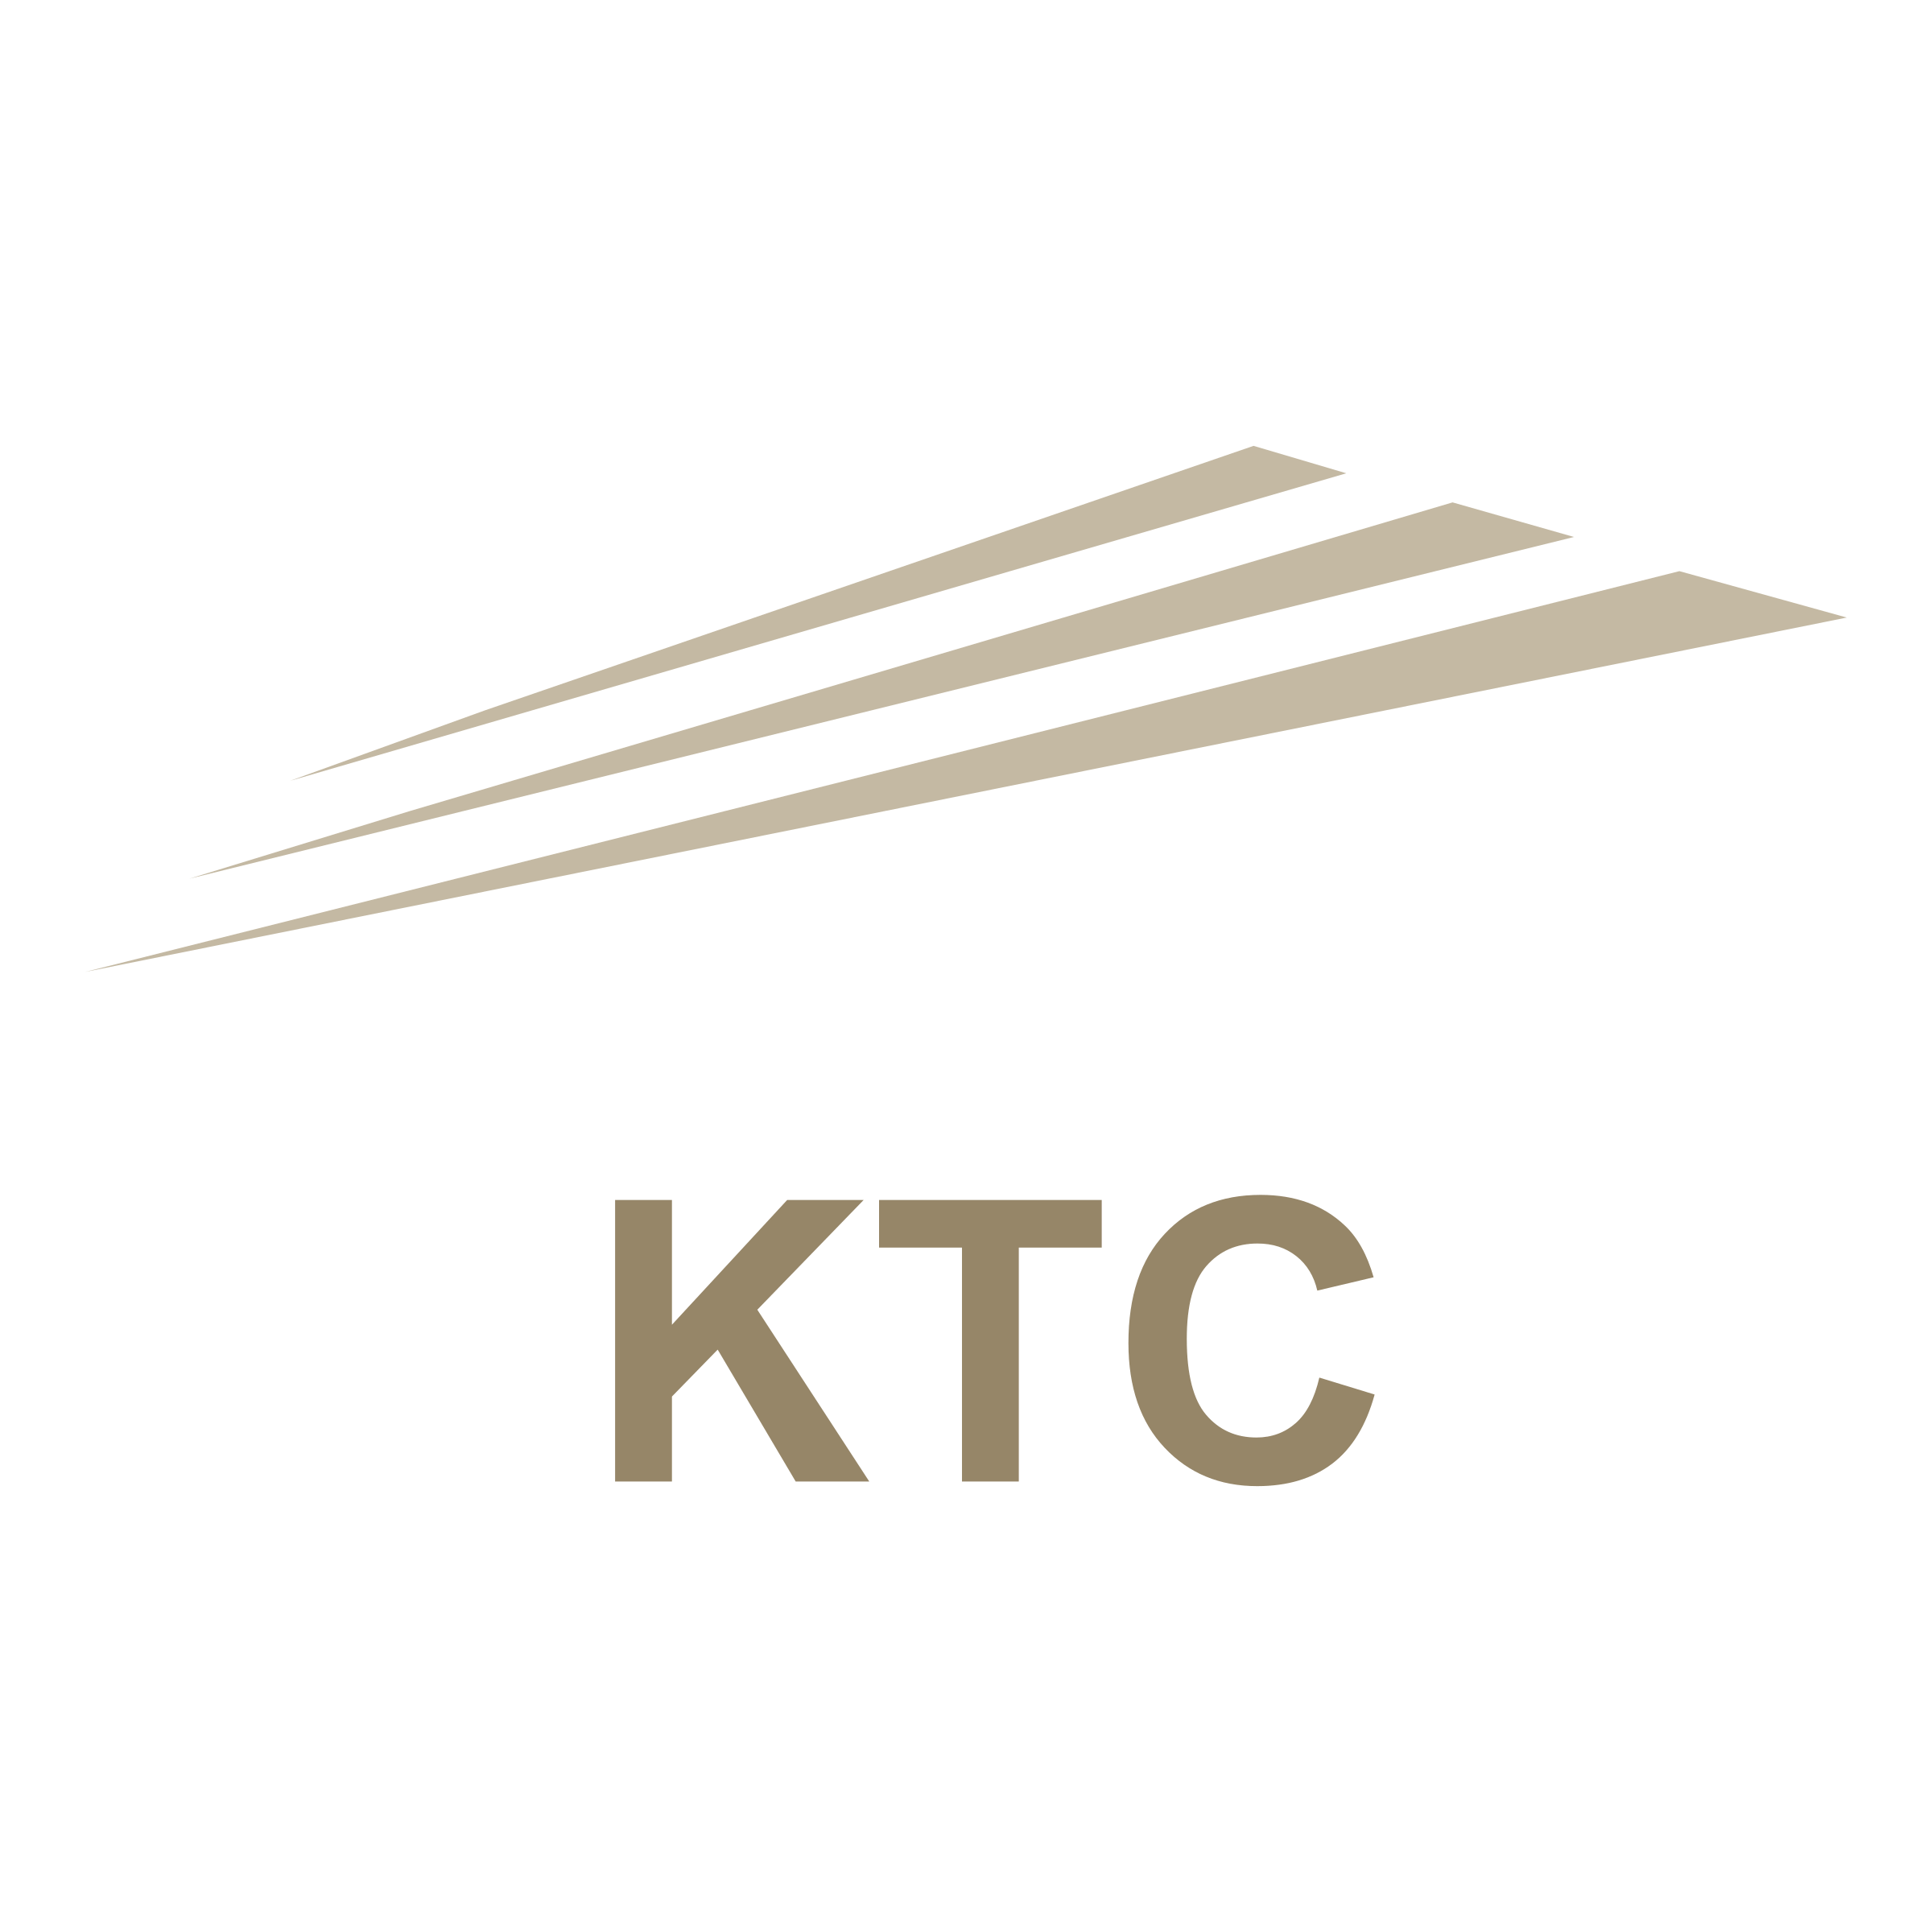 KTC Logo - KTC Logo PNG Transparent & SVG Vector - Freebie Supply